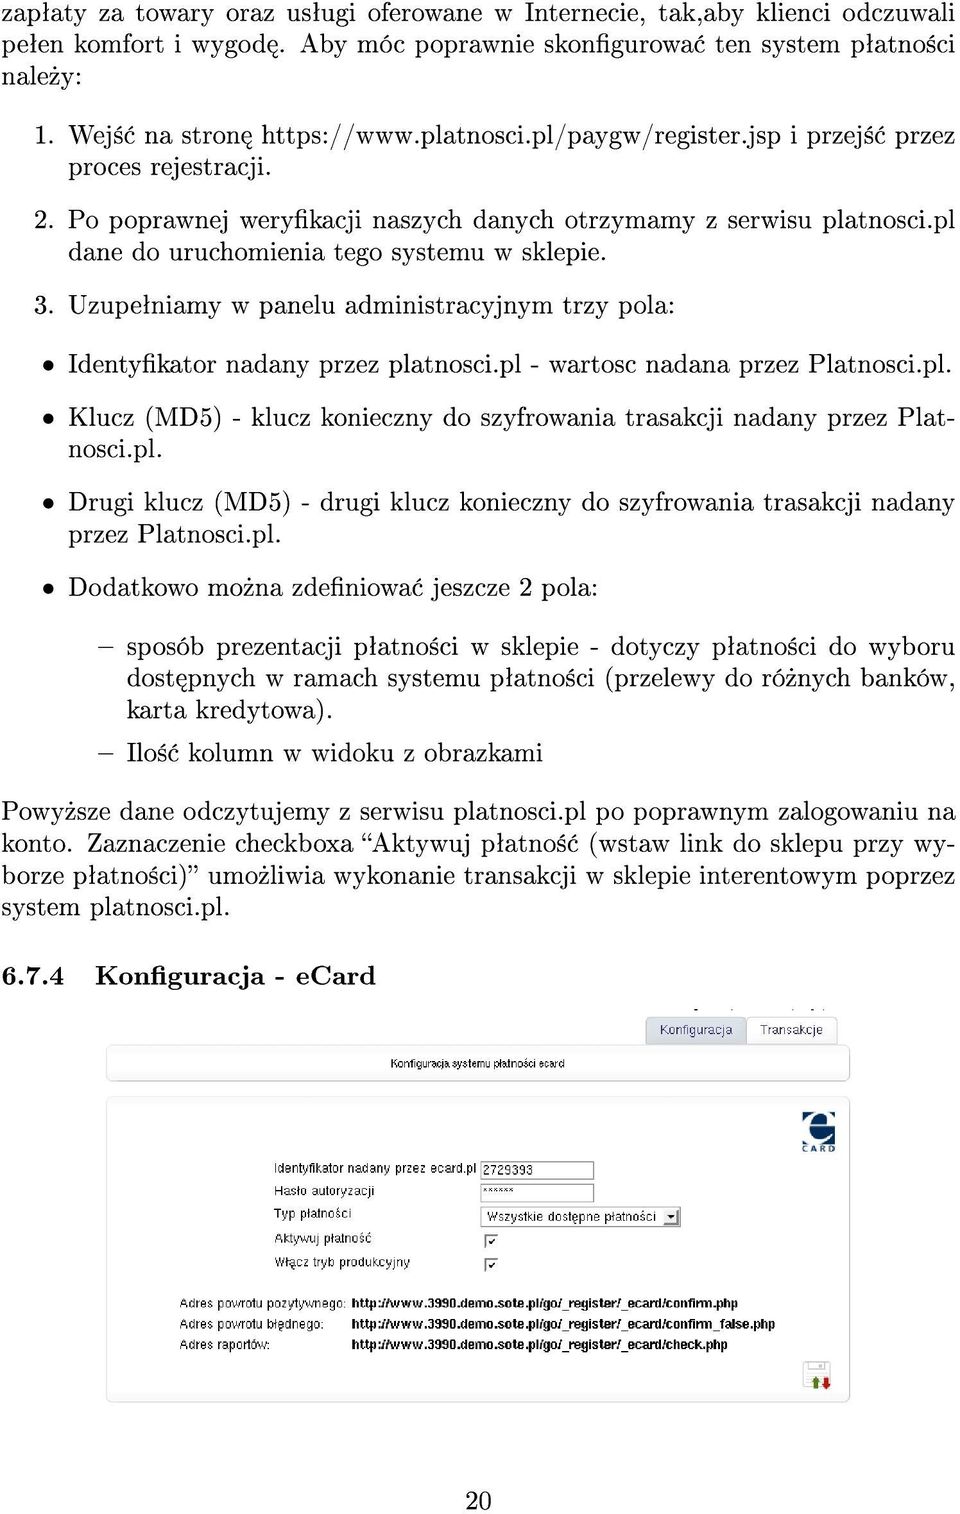 Uzupeªniamy w panelu administracyjnym trzy pola: Identykator nadany przez platnosci.pl - wartosc nadana przez Platnosci.pl. Klucz (MD5) - klucz konieczny do szyfrowania trasakcji nadany przez Platnosci.